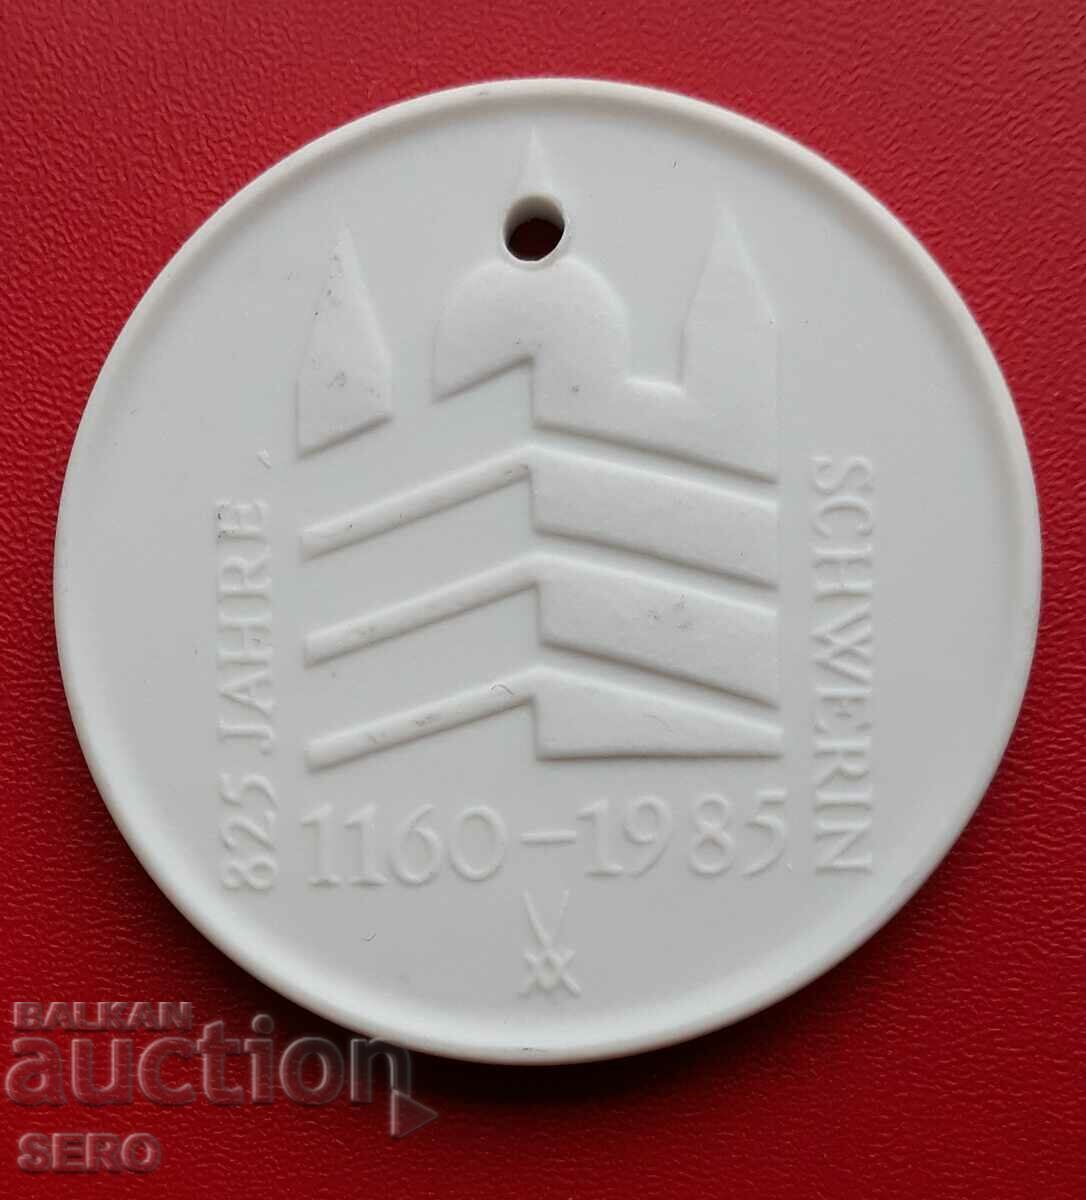 Germany-GDR-porcelain medal-825 city of Schwerin